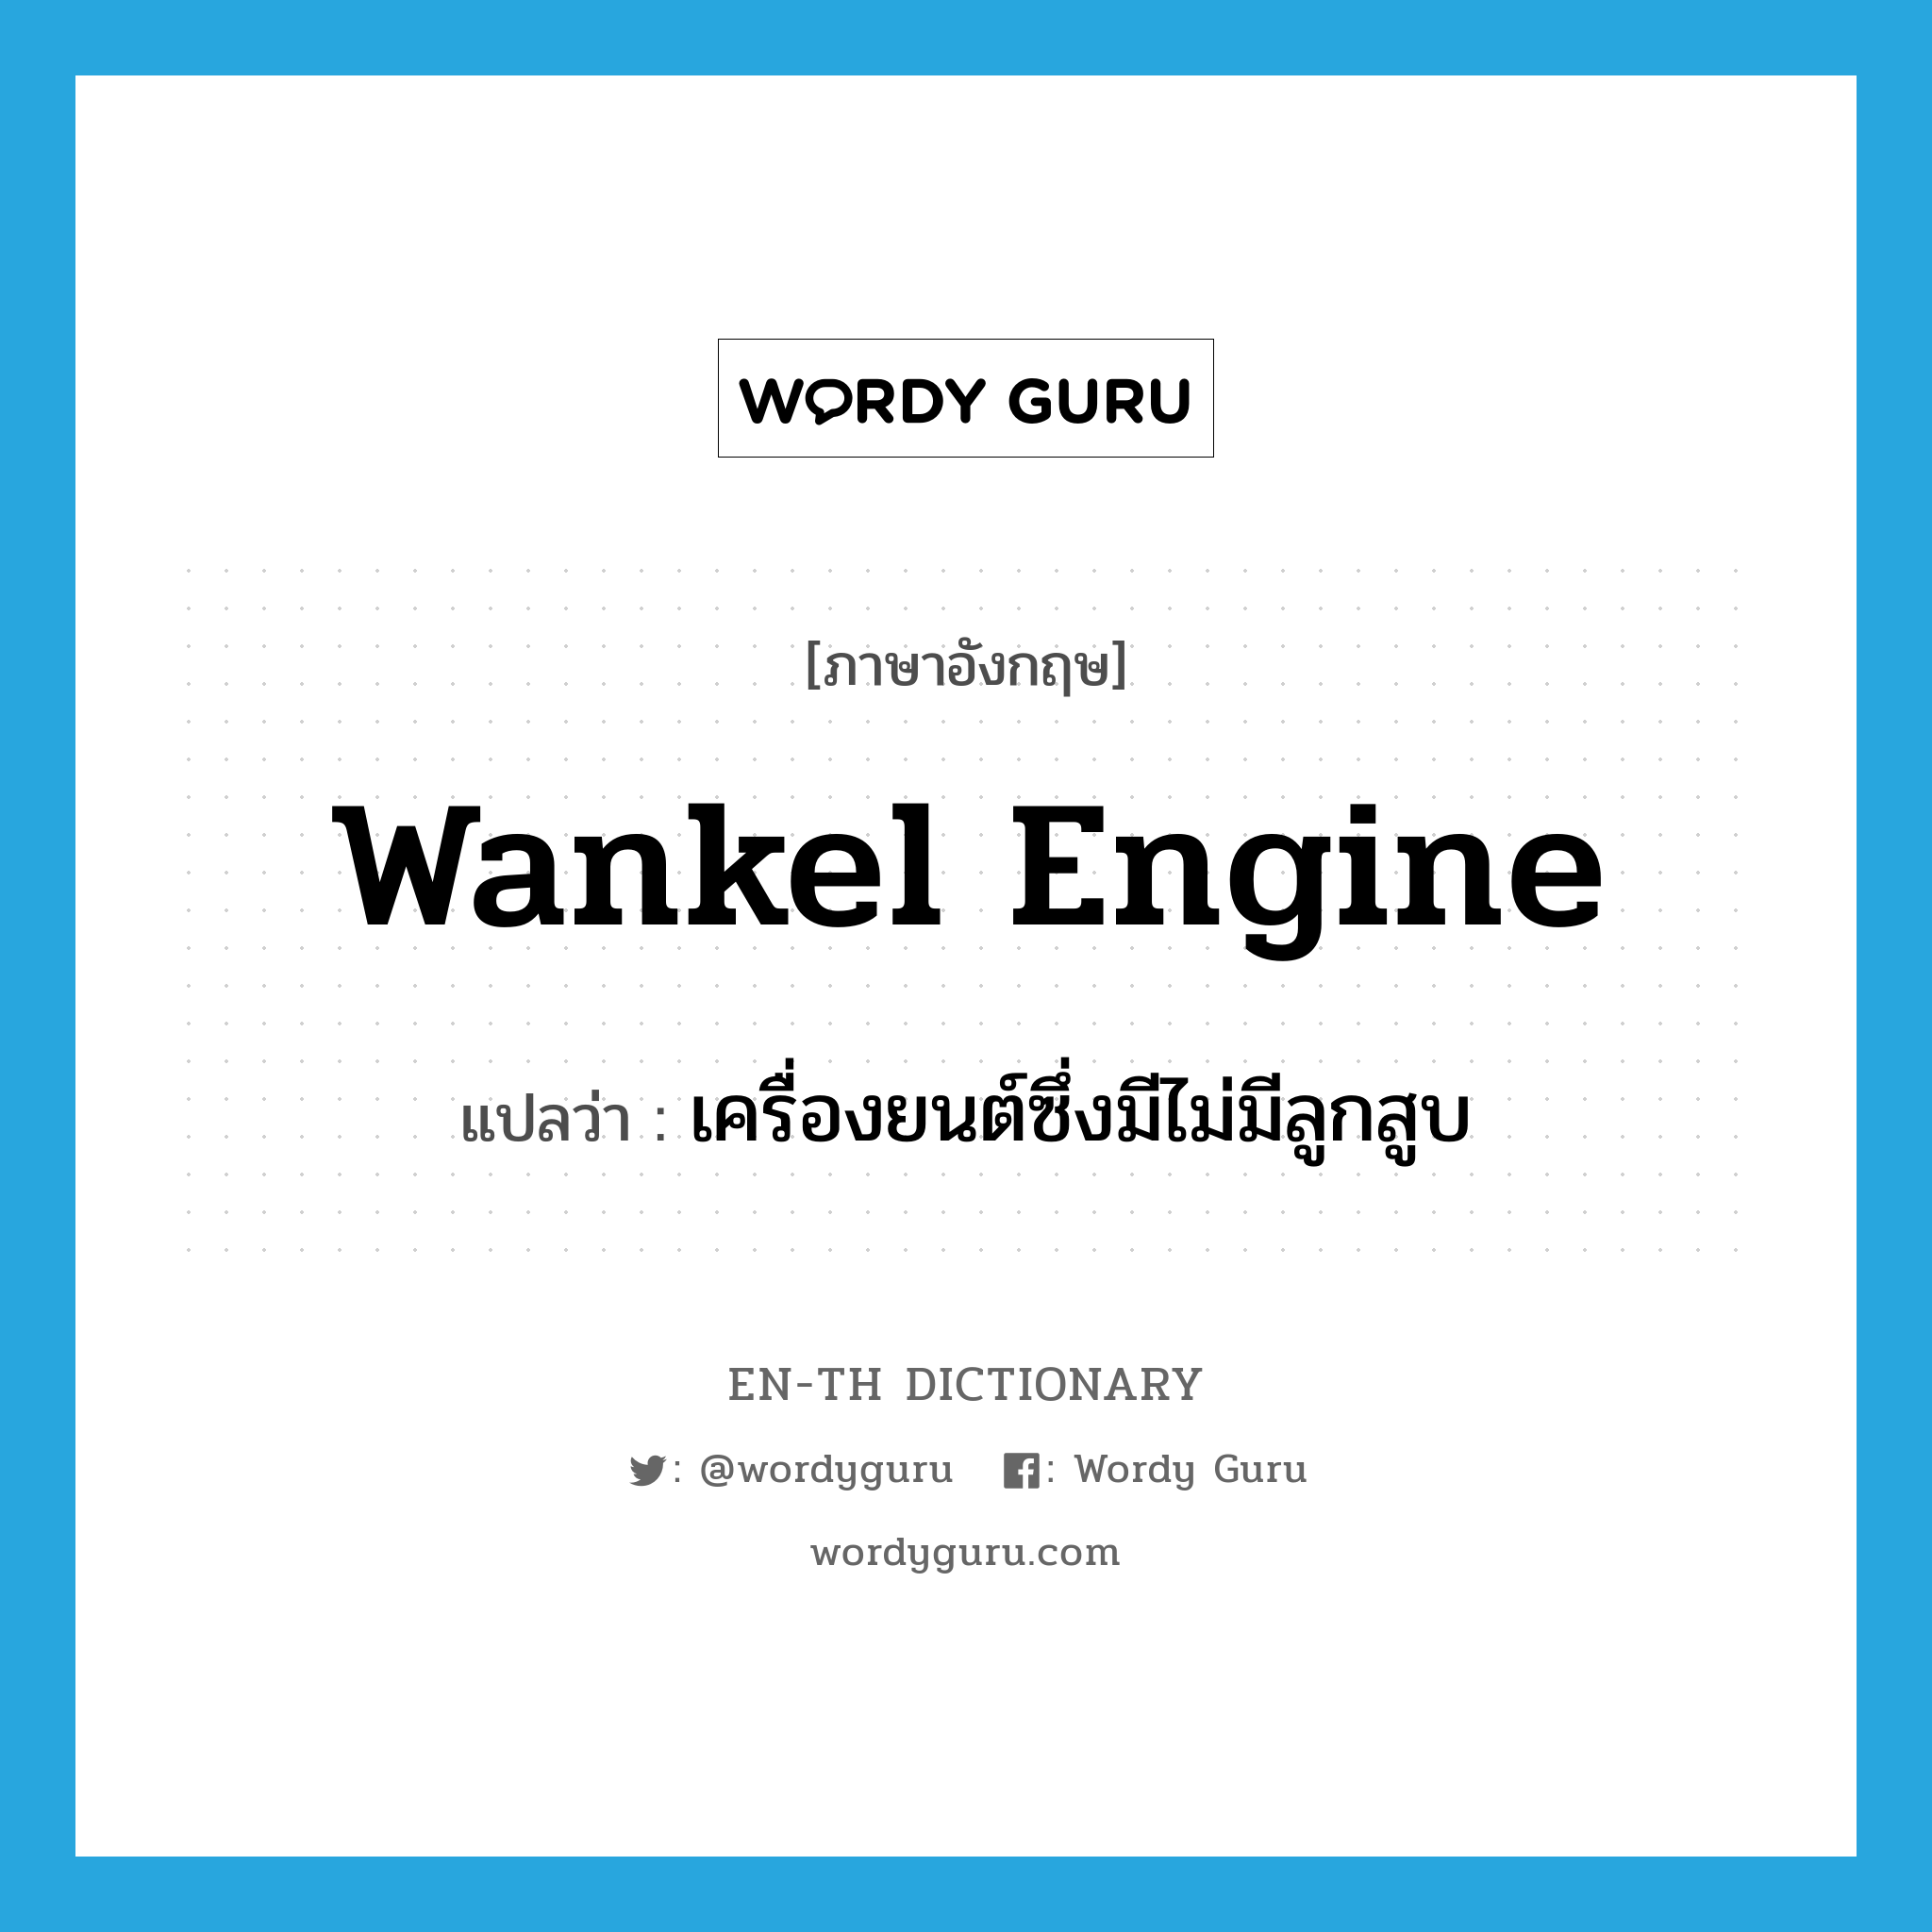 Wankel engine แปลว่า?, คำศัพท์ภาษาอังกฤษ Wankel engine แปลว่า เครื่องยนต์ซึ่งมีไม่มีลูกสูบ ประเภท N หมวด N